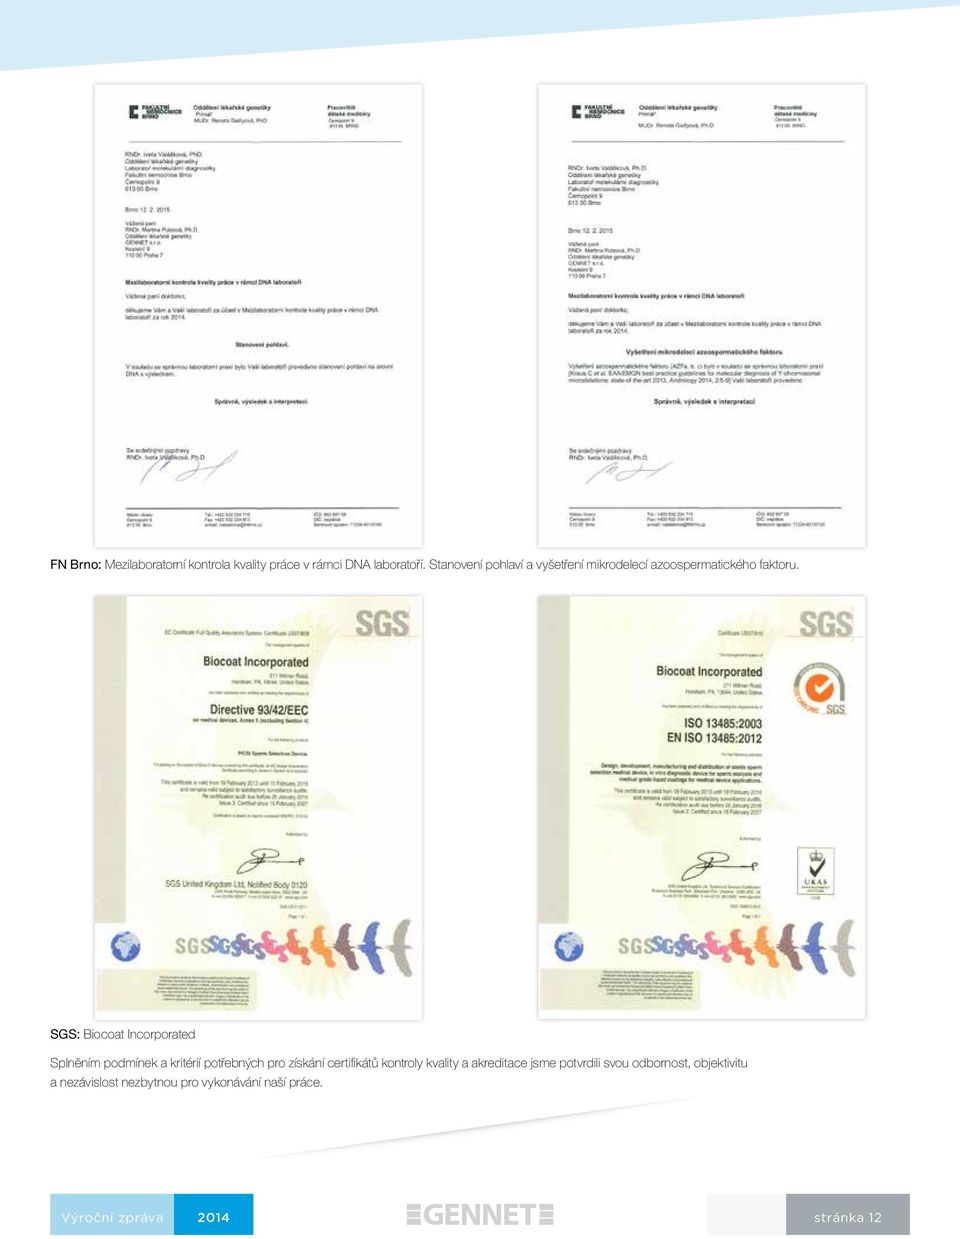 SGS: Biocoat Incorporated Splněním podmínek a kritérií potřebných pro získání certifikátů